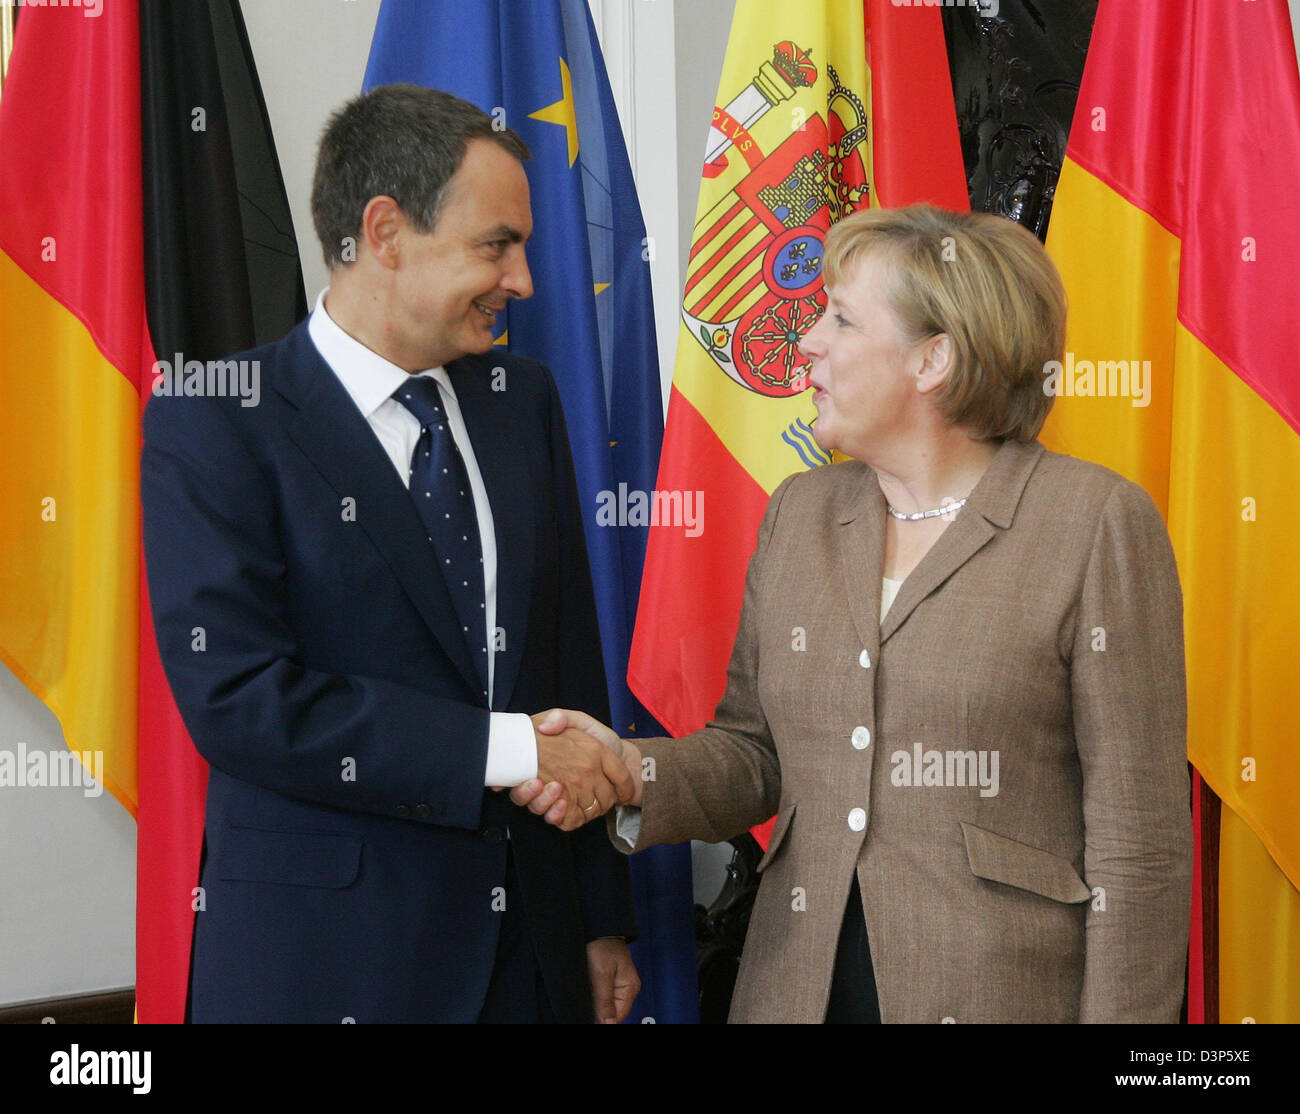 La chancelière allemande Angela Merkel (R) et le Premier ministre espagnol Jose Luis Rodriguez Zapatero (L) se serrer la main au niveau de l'articulation des consultations du gouvernement à Meersburg, Allemagne, mardi 12 septembre 2006. Photo : Daniel Maurer Banque D'Images